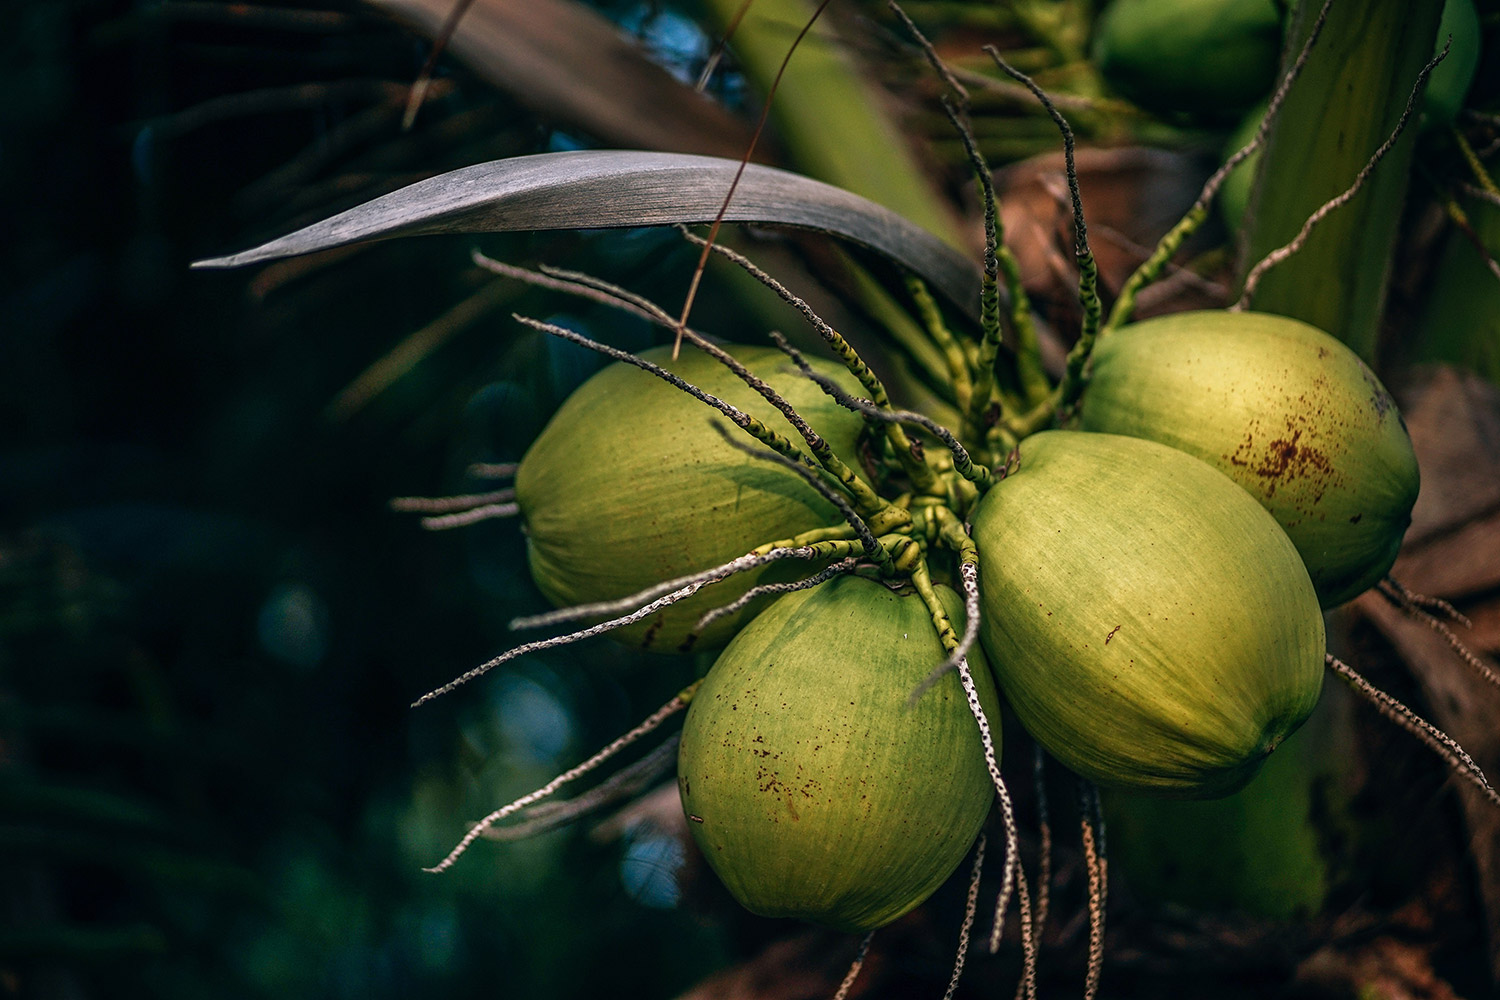 Sustentabilidade: A reutilização da casca do coco verde